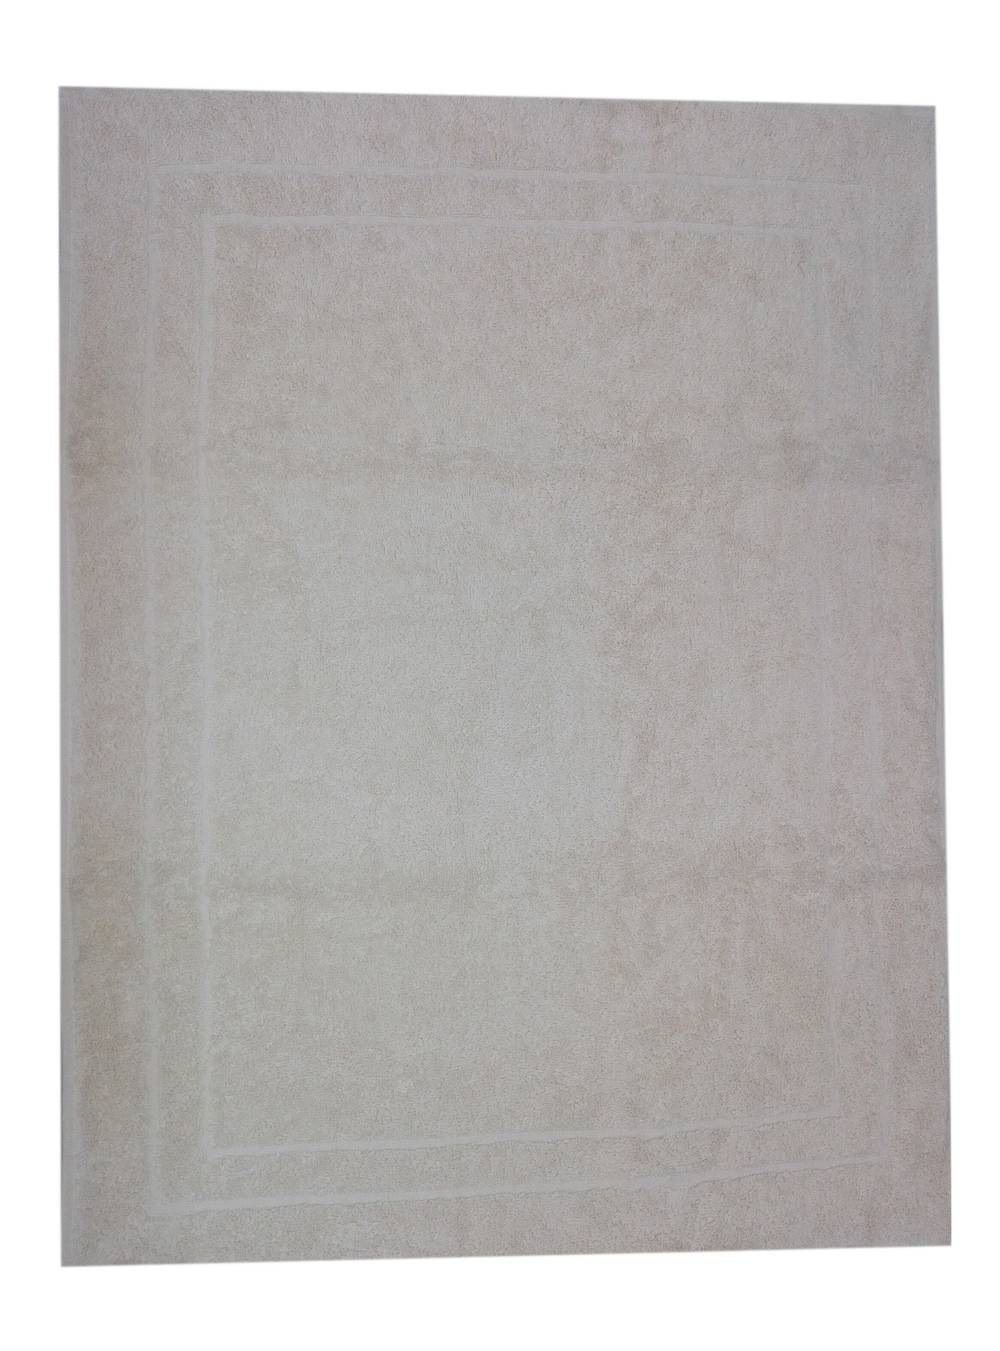 Lourdes toalla piso crudo (50 x 65 cm)